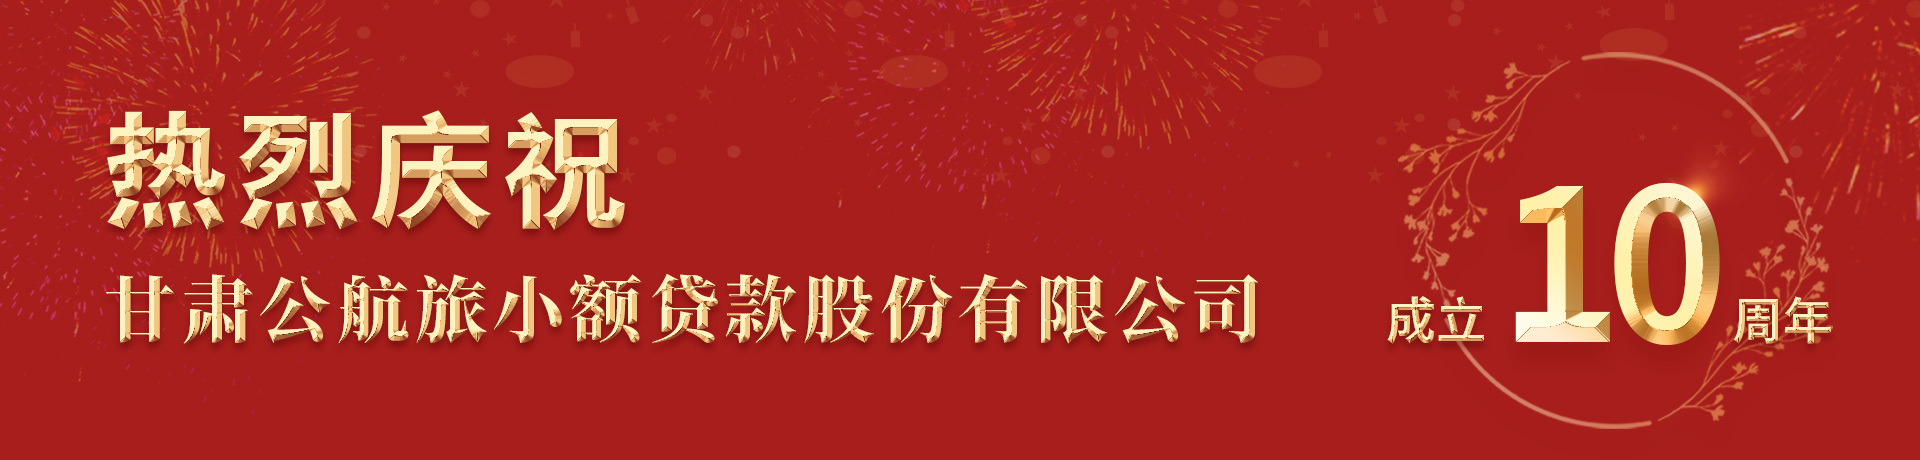 热烈庆祝甘肃公航旅小额贷款股份有限公司成立十周年